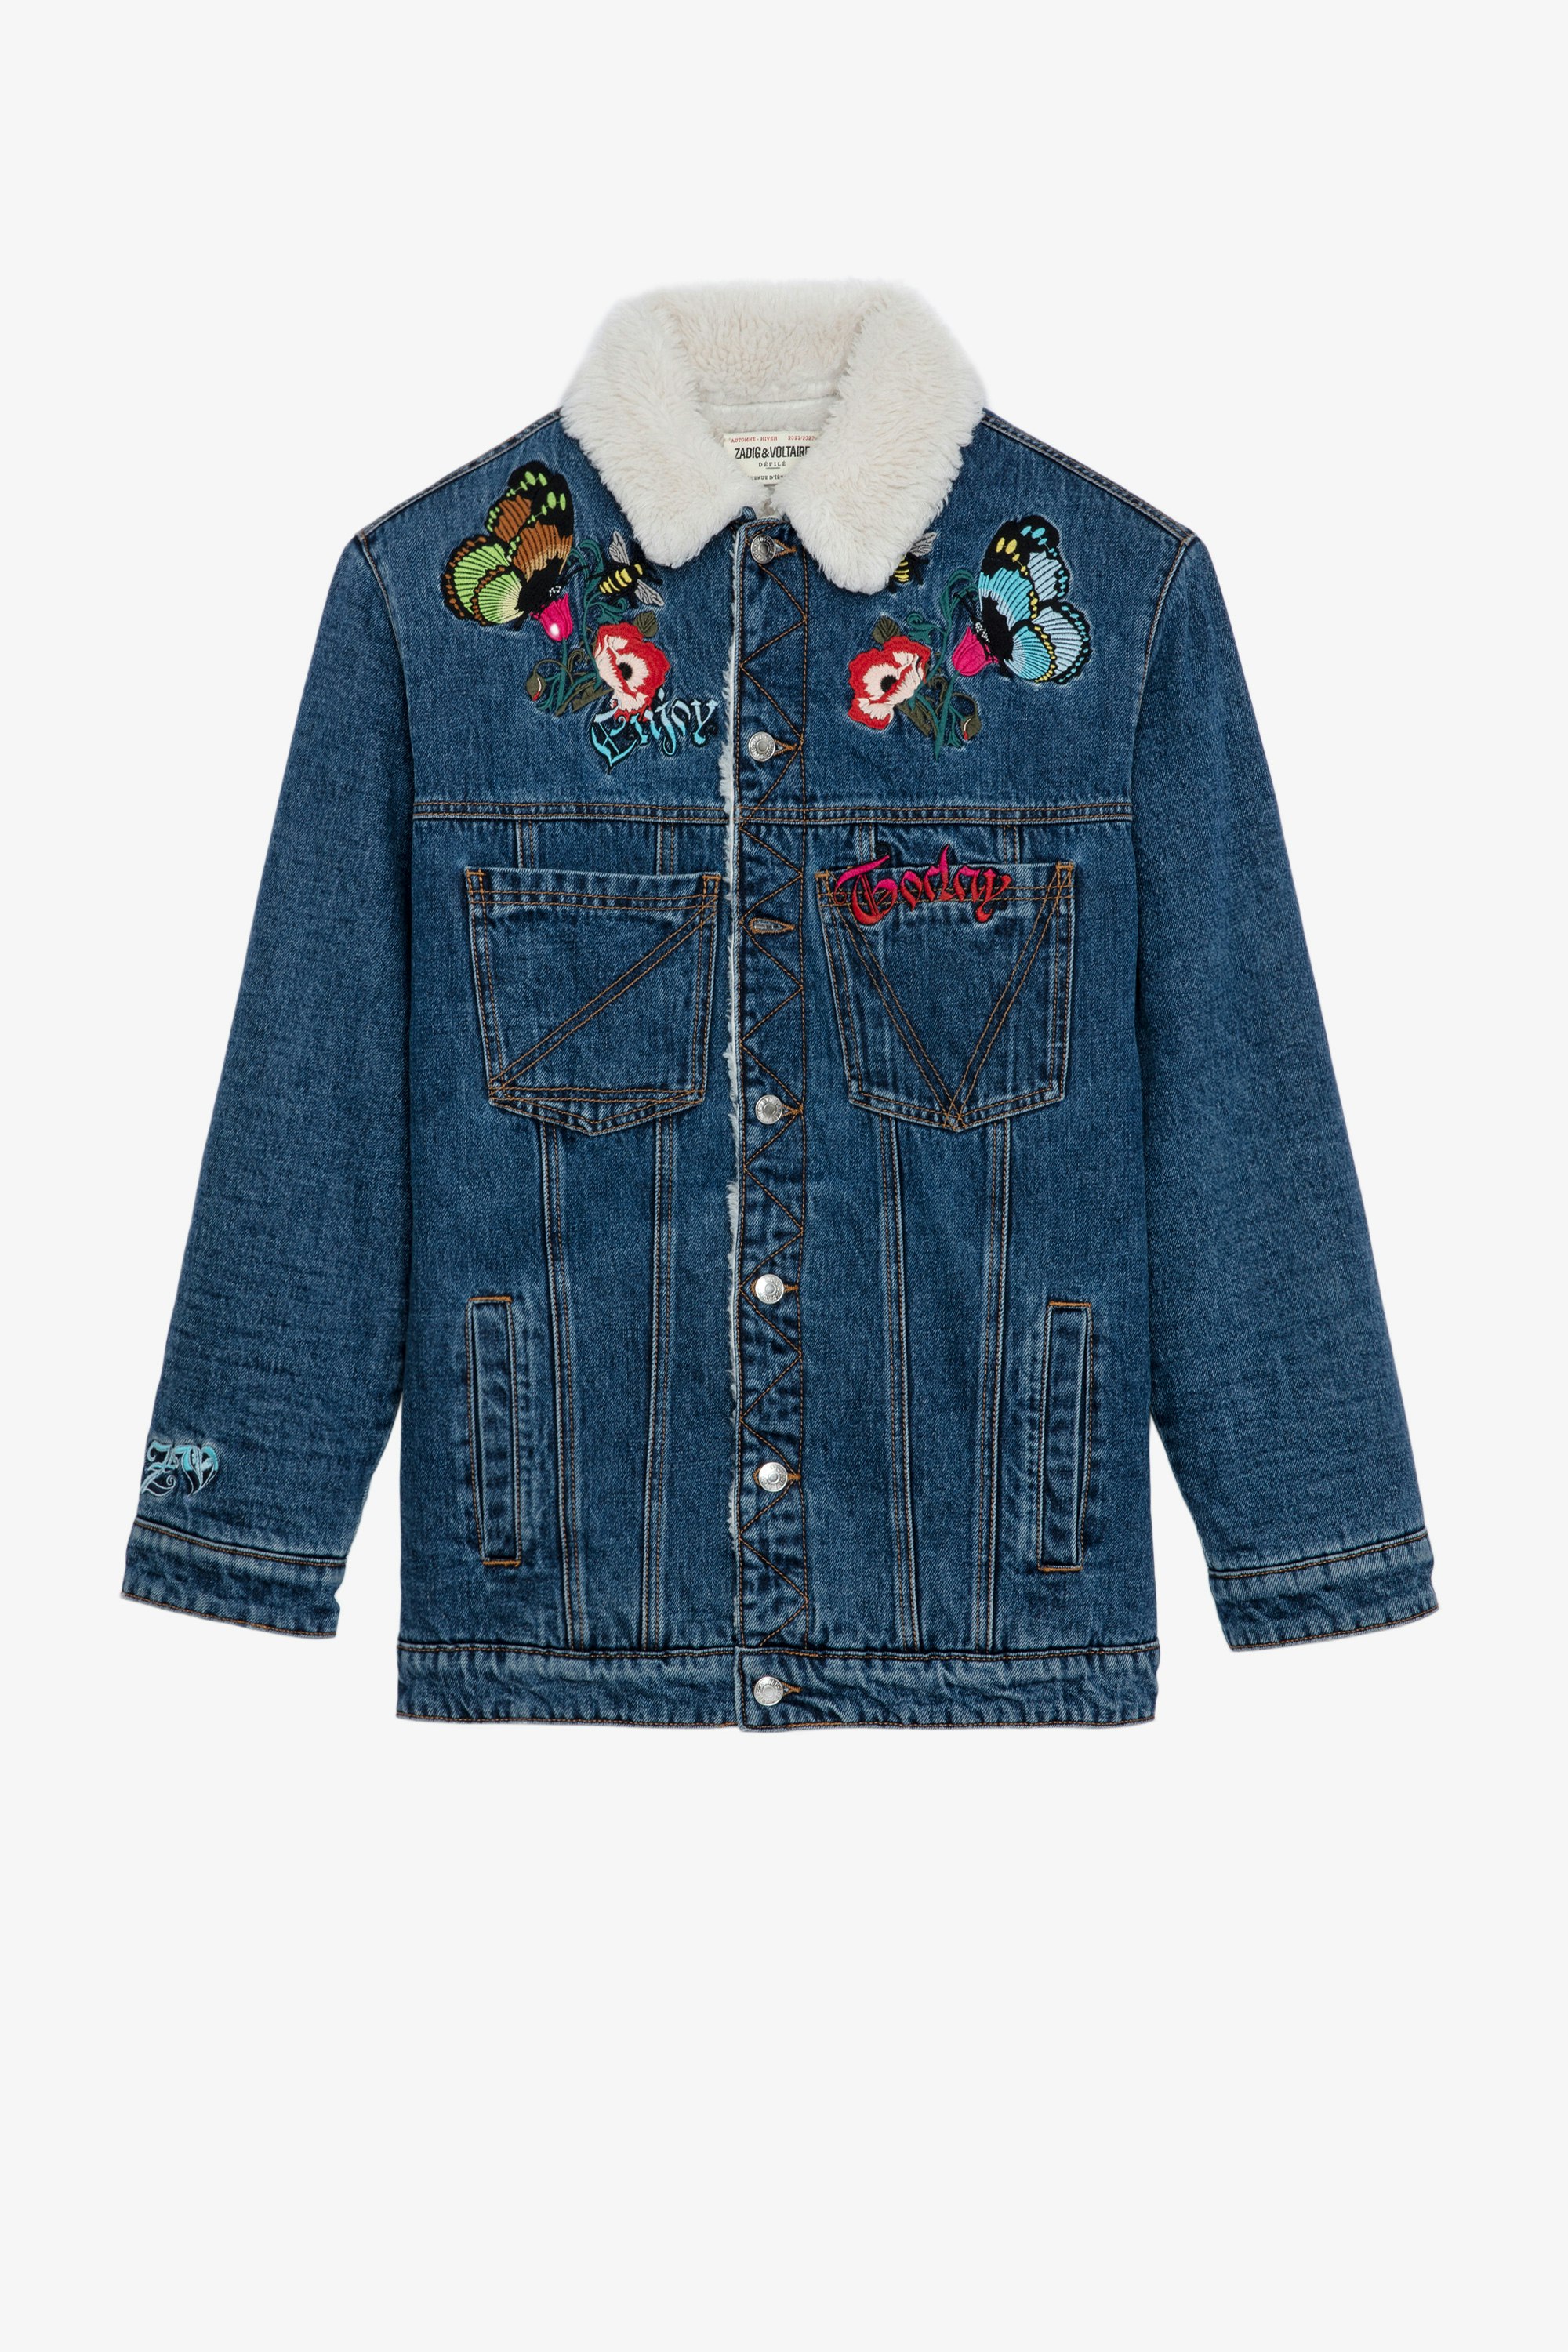 Kiome Denim Jacket Women’s sky blue denim jacket with embroidery 